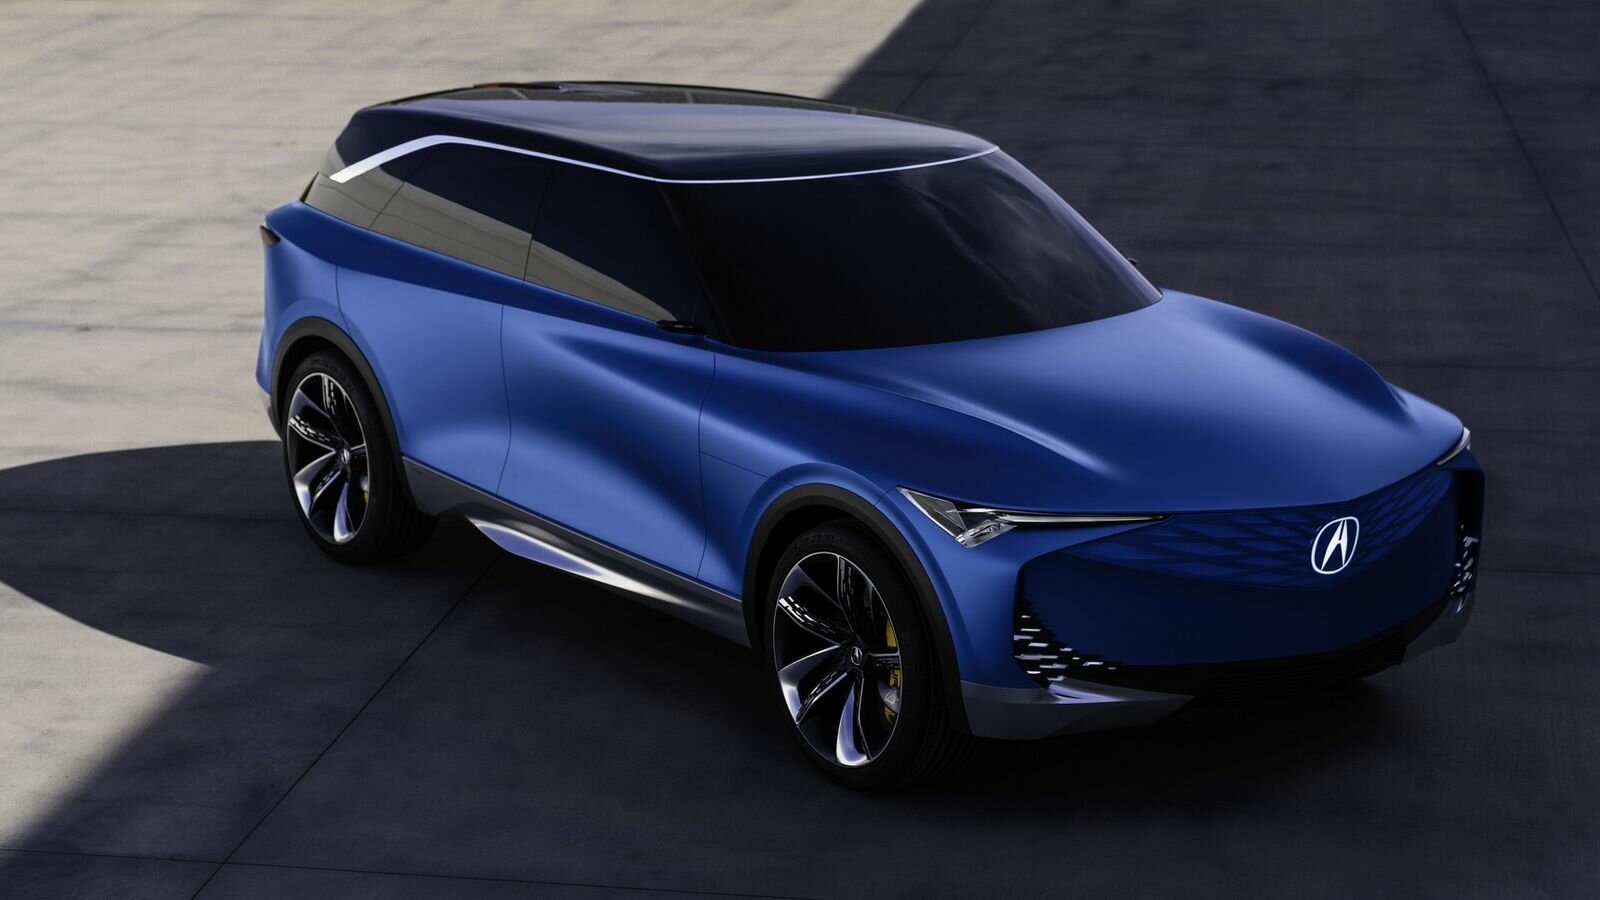 Acura представила прототип электрокроссовера Precision EV с подвижными приборами